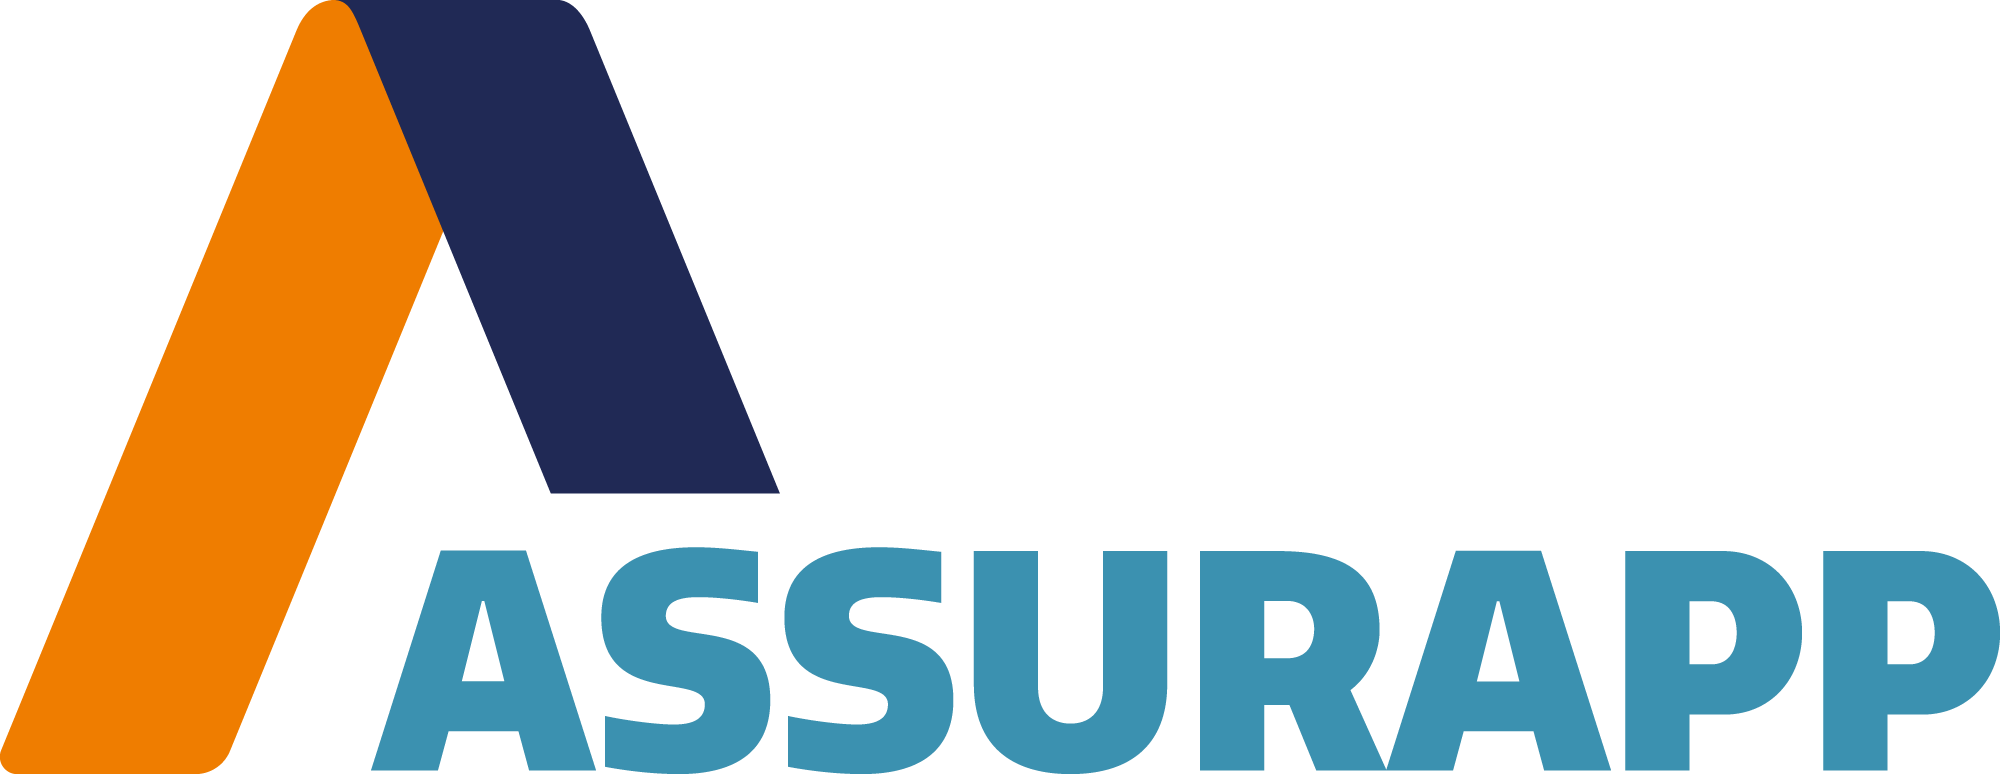 assurapp_logo